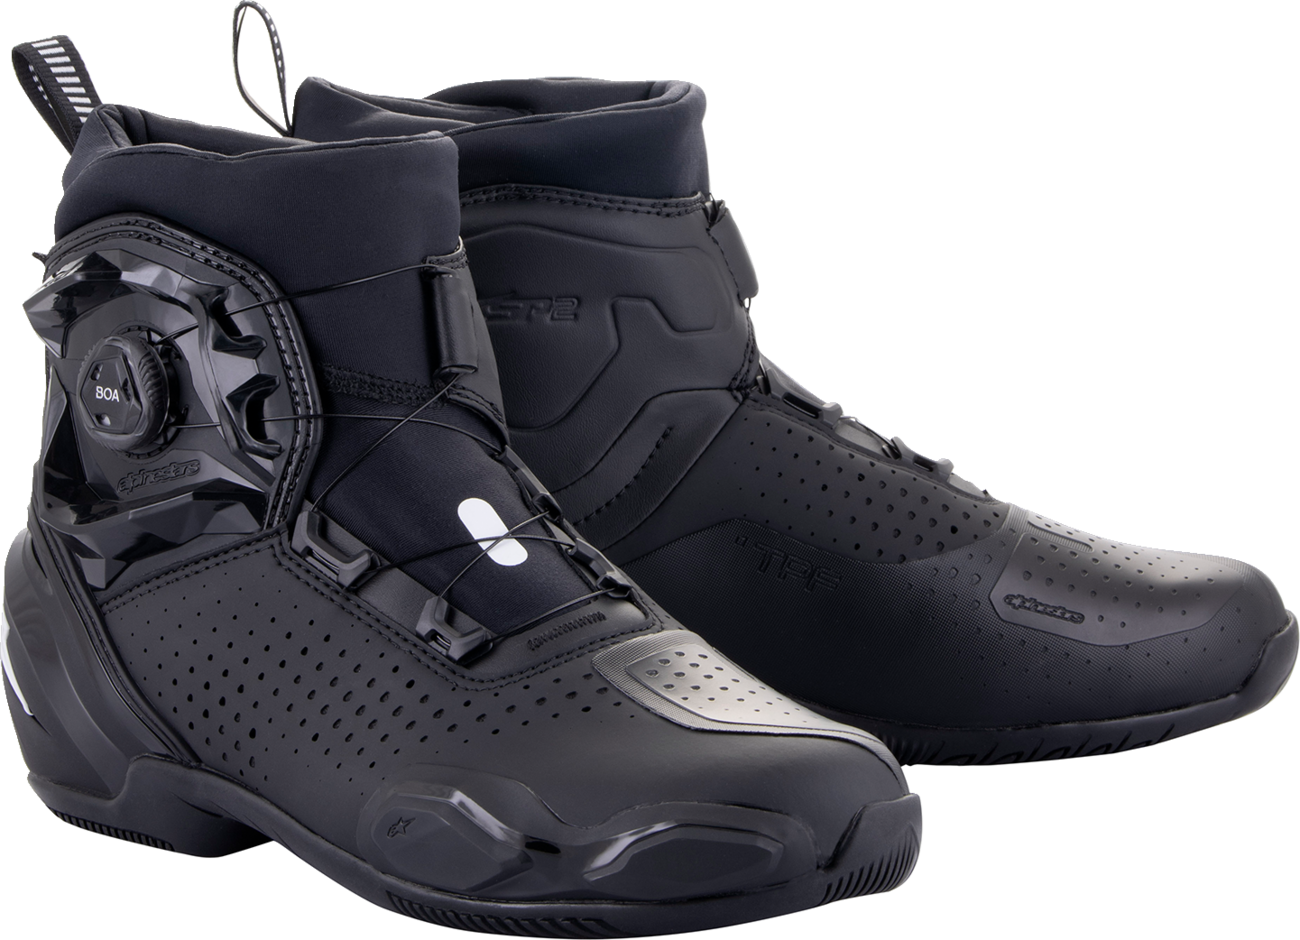 Zapatos ALPINESTARS SP-2 - Negro - US 9.5 / EU 44 2511622-10-44